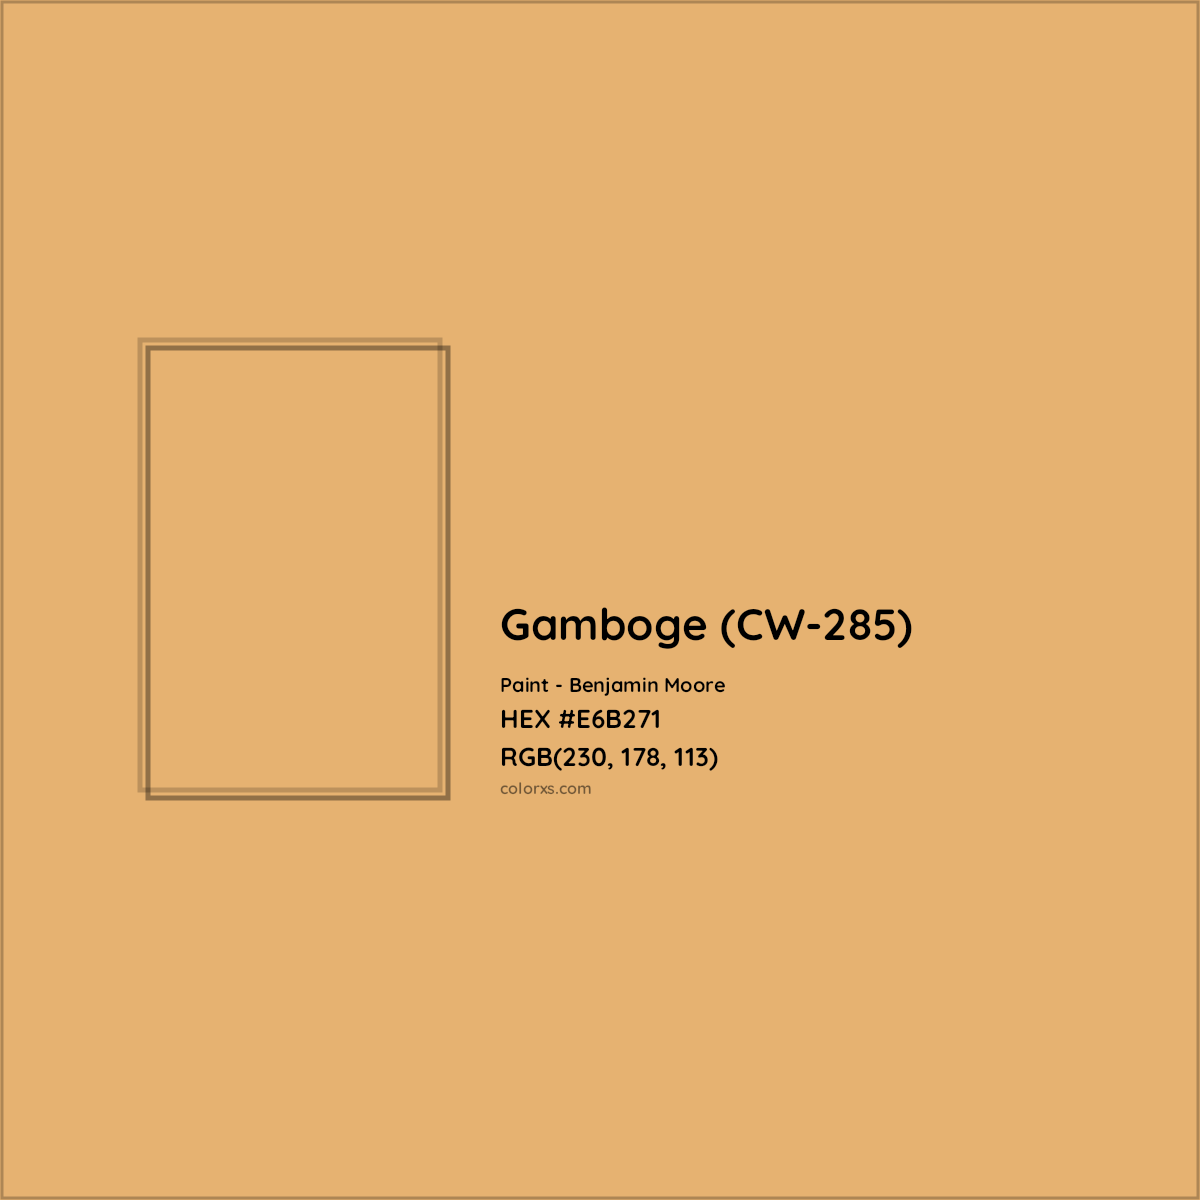 HEX #E6B271 Gamboge (CW-285) Paint Benjamin Moore - Color Code